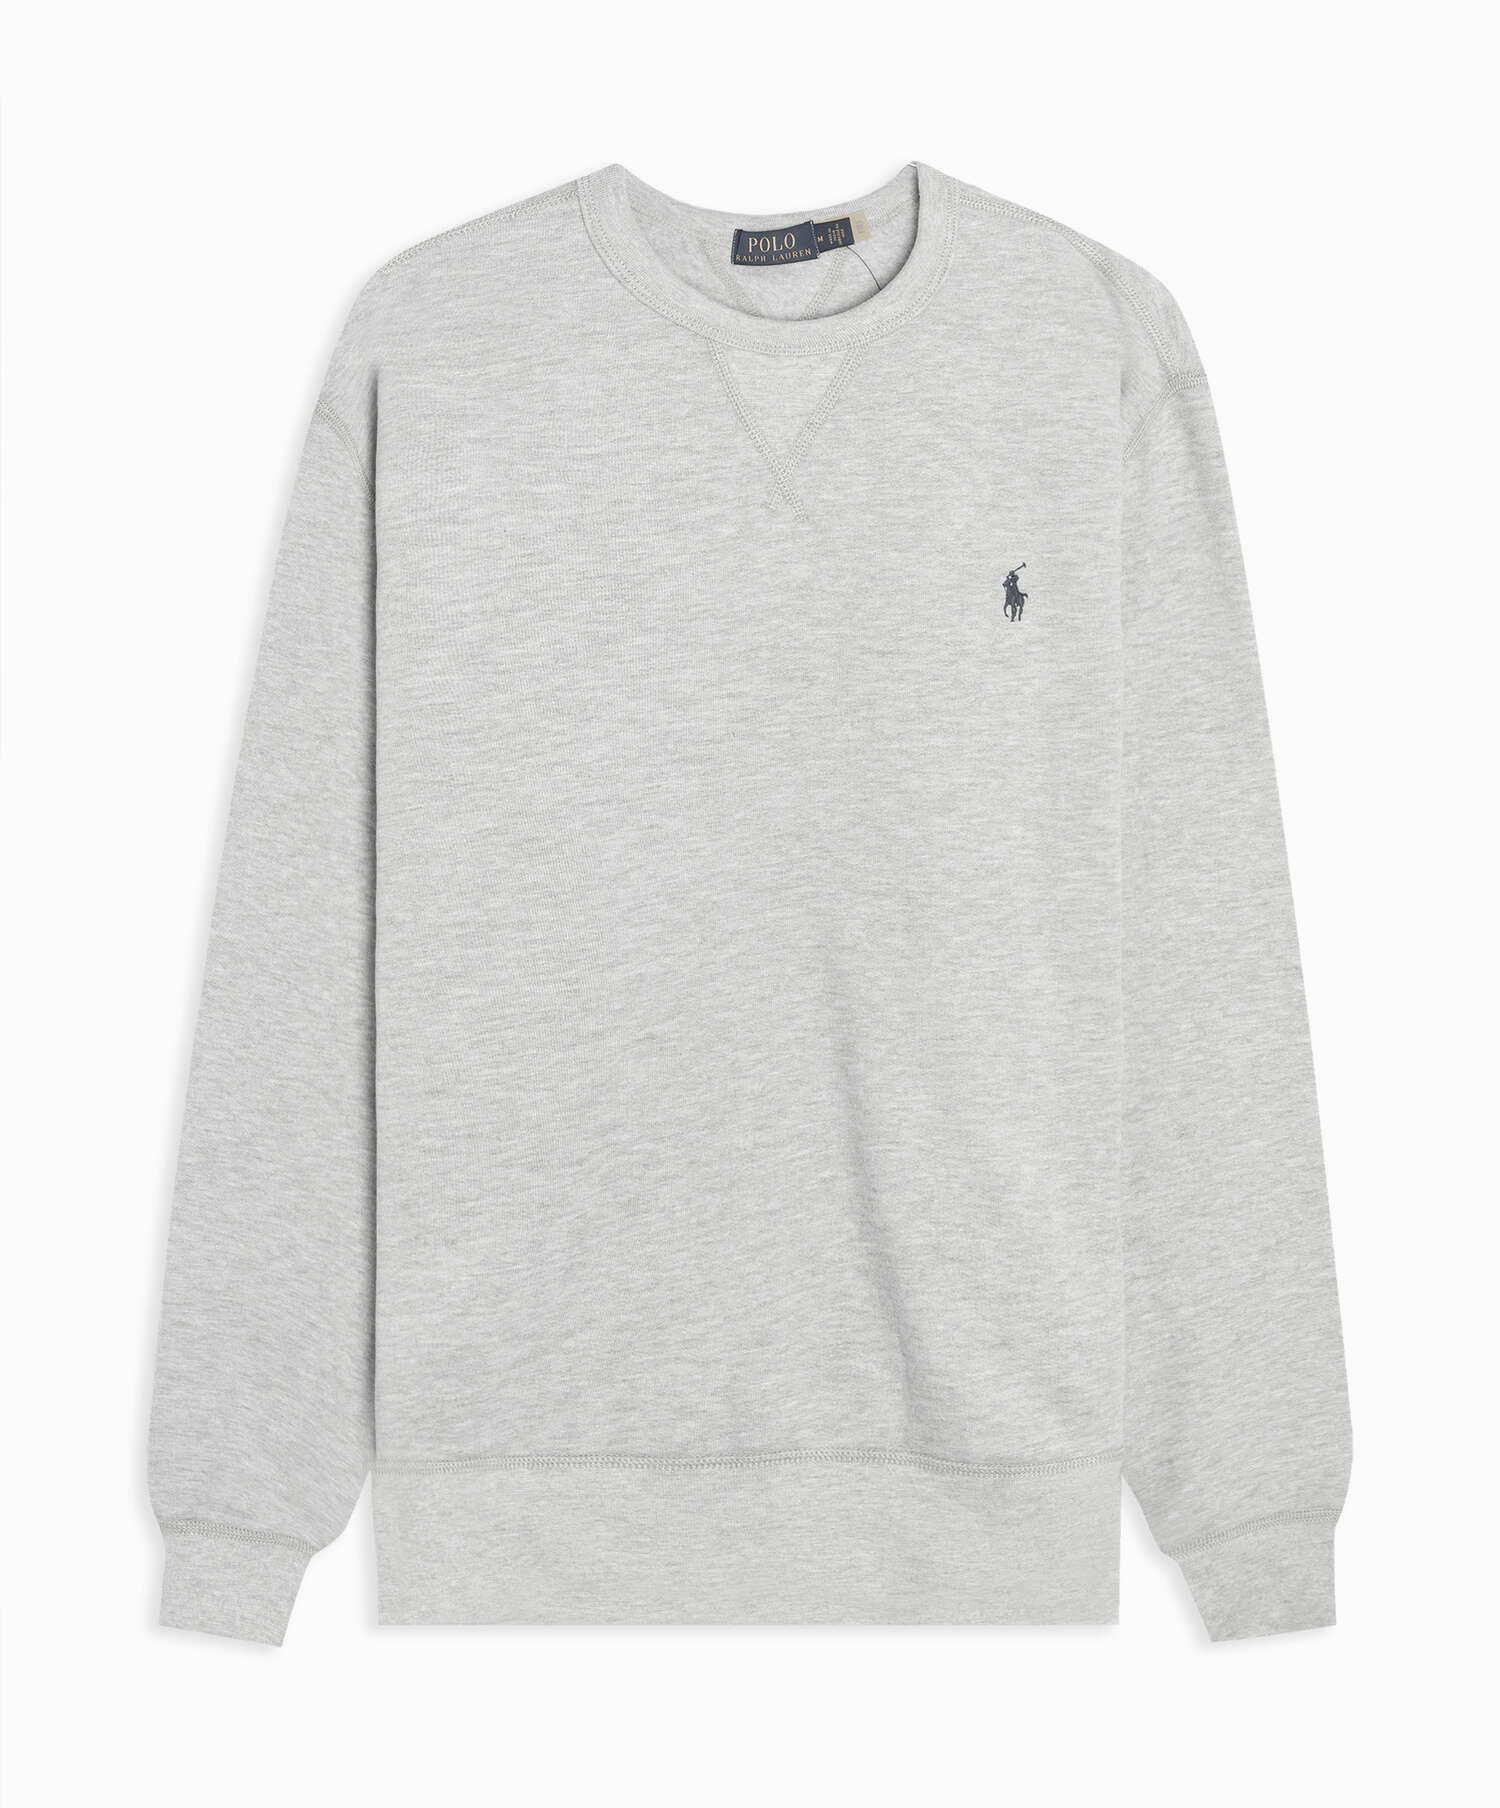 Polo Ralph Lauren Sweatshirt Online Gray Buy 710766772004| Fleece Classics Men\'s FOOTDISTRICT at